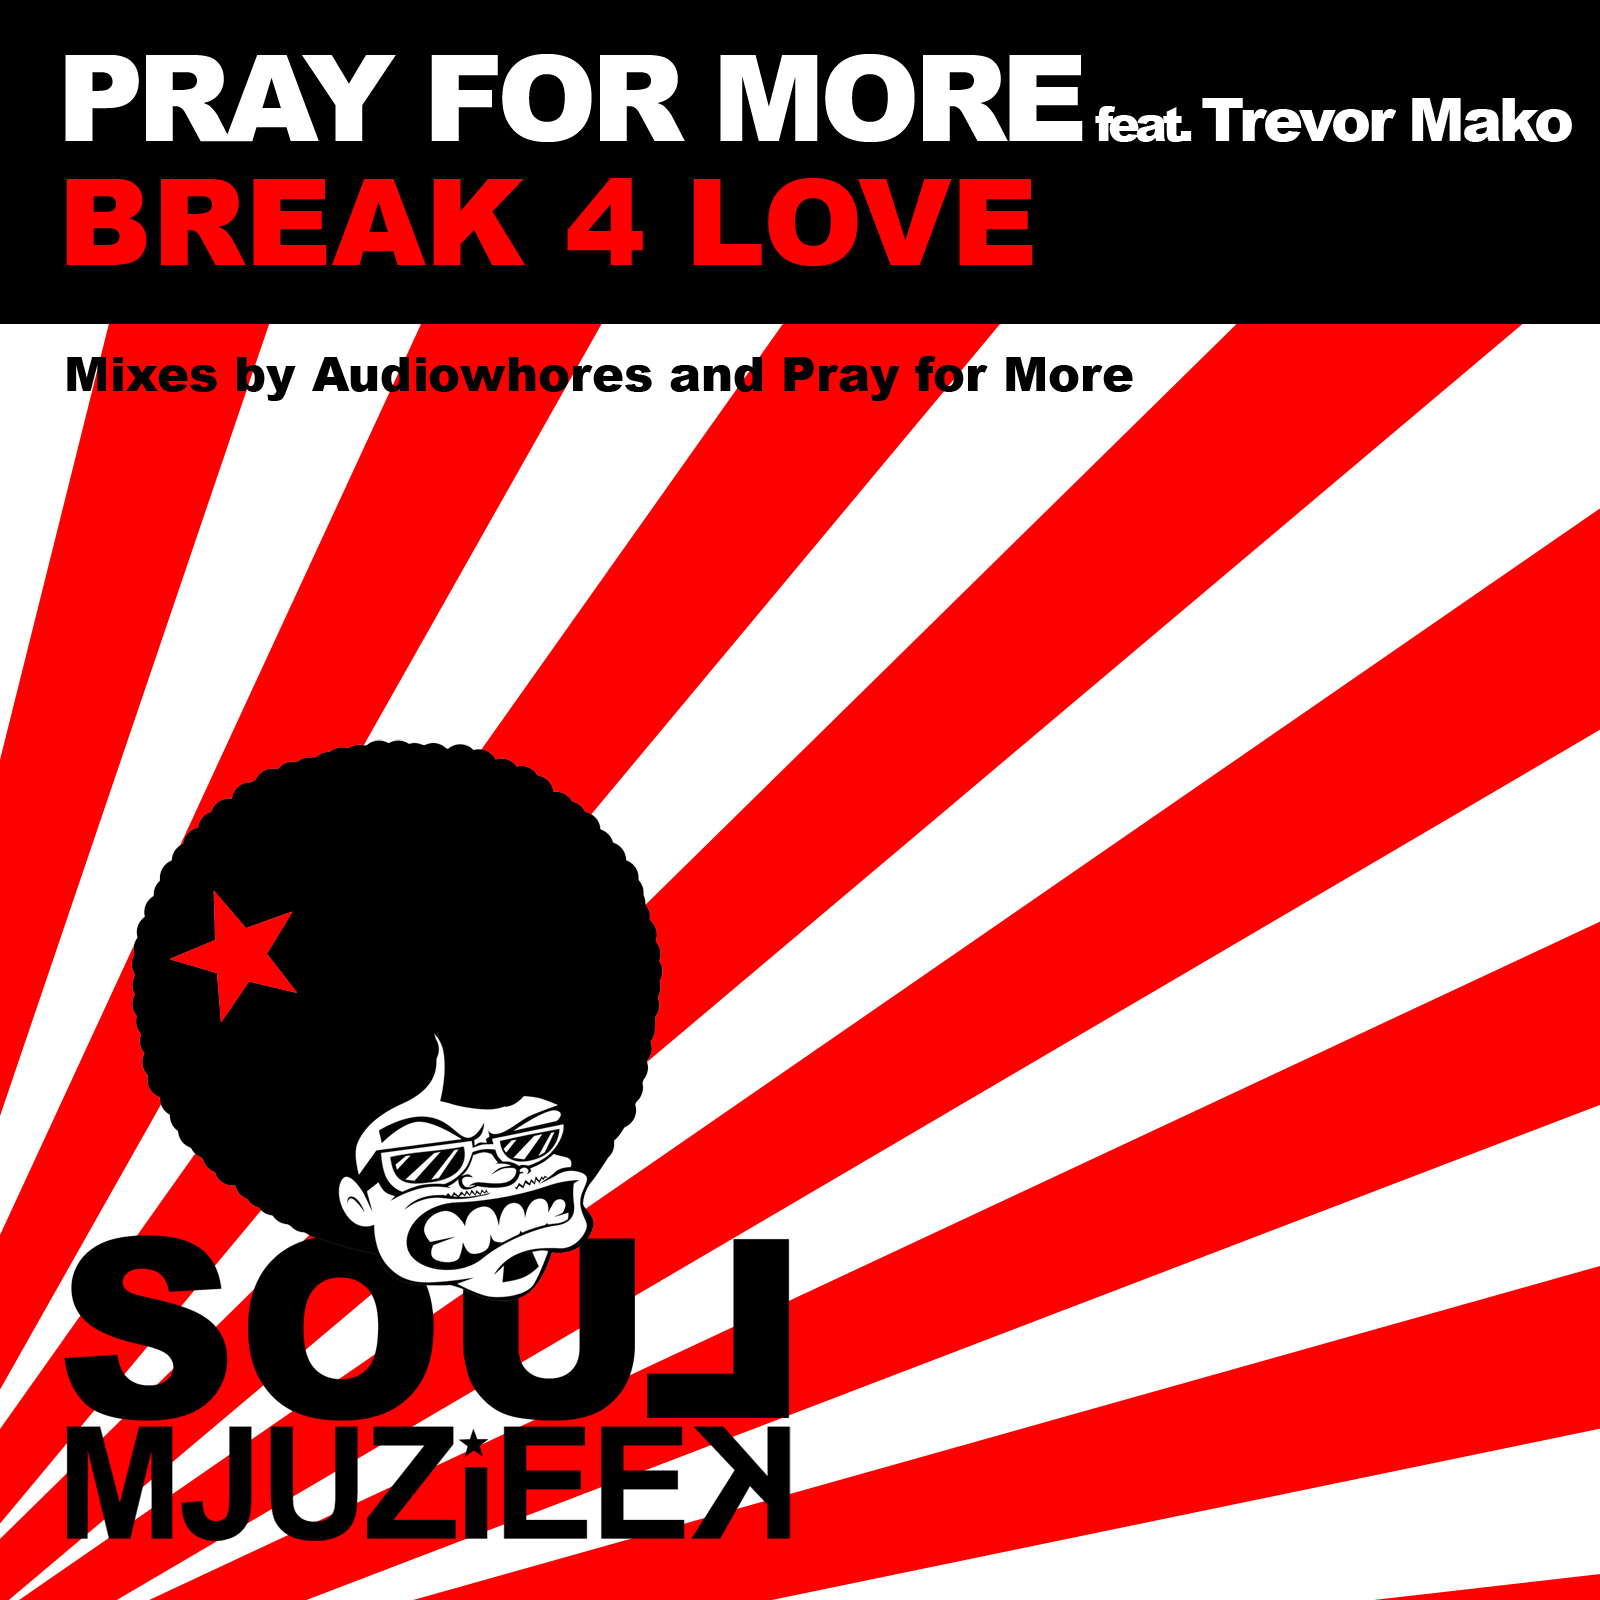 Pray For More feat Trevor Mako - Break 4 Love